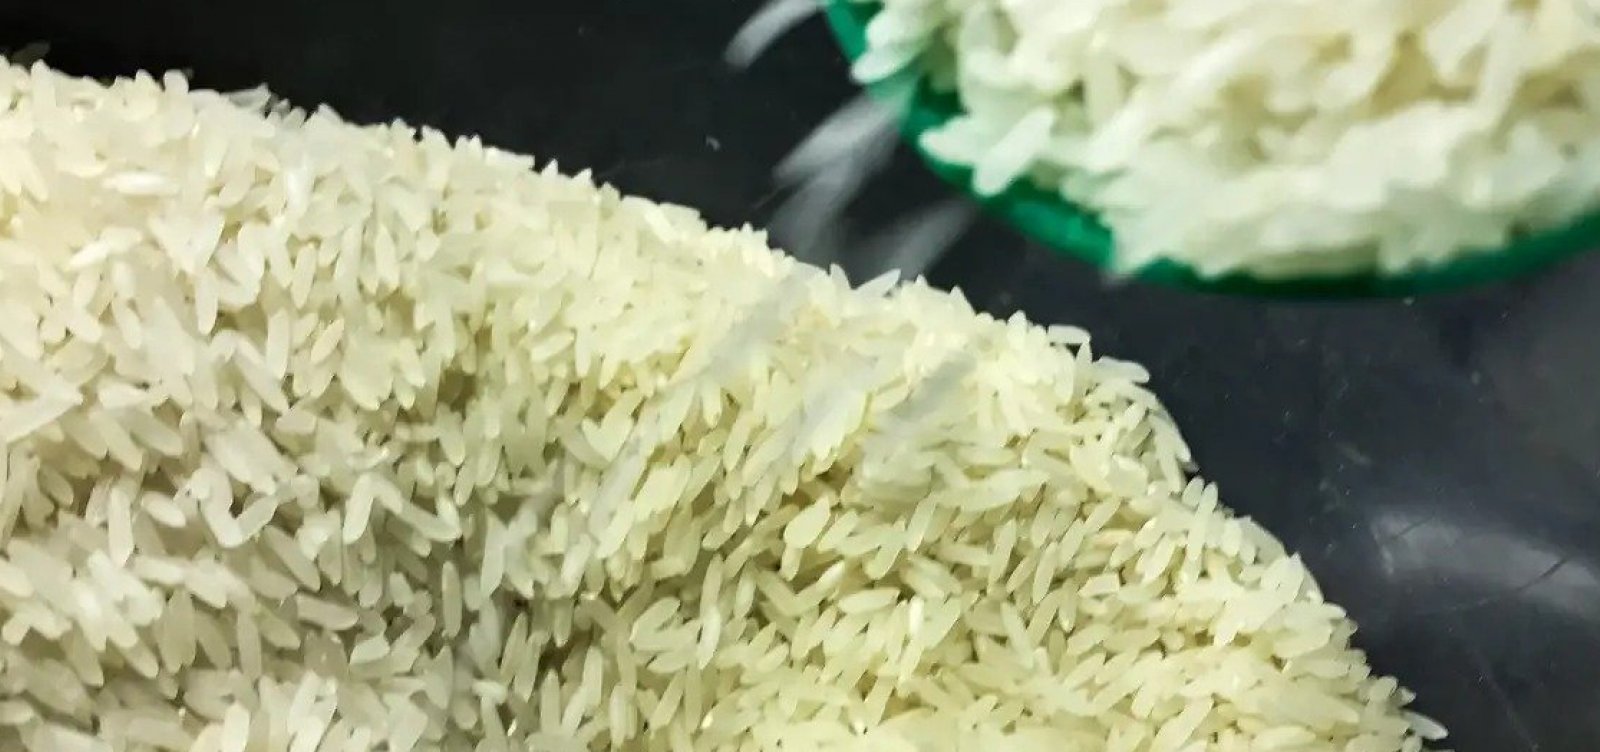 Governo firma acordo com produtores e indústria para monitorar preço do arroz